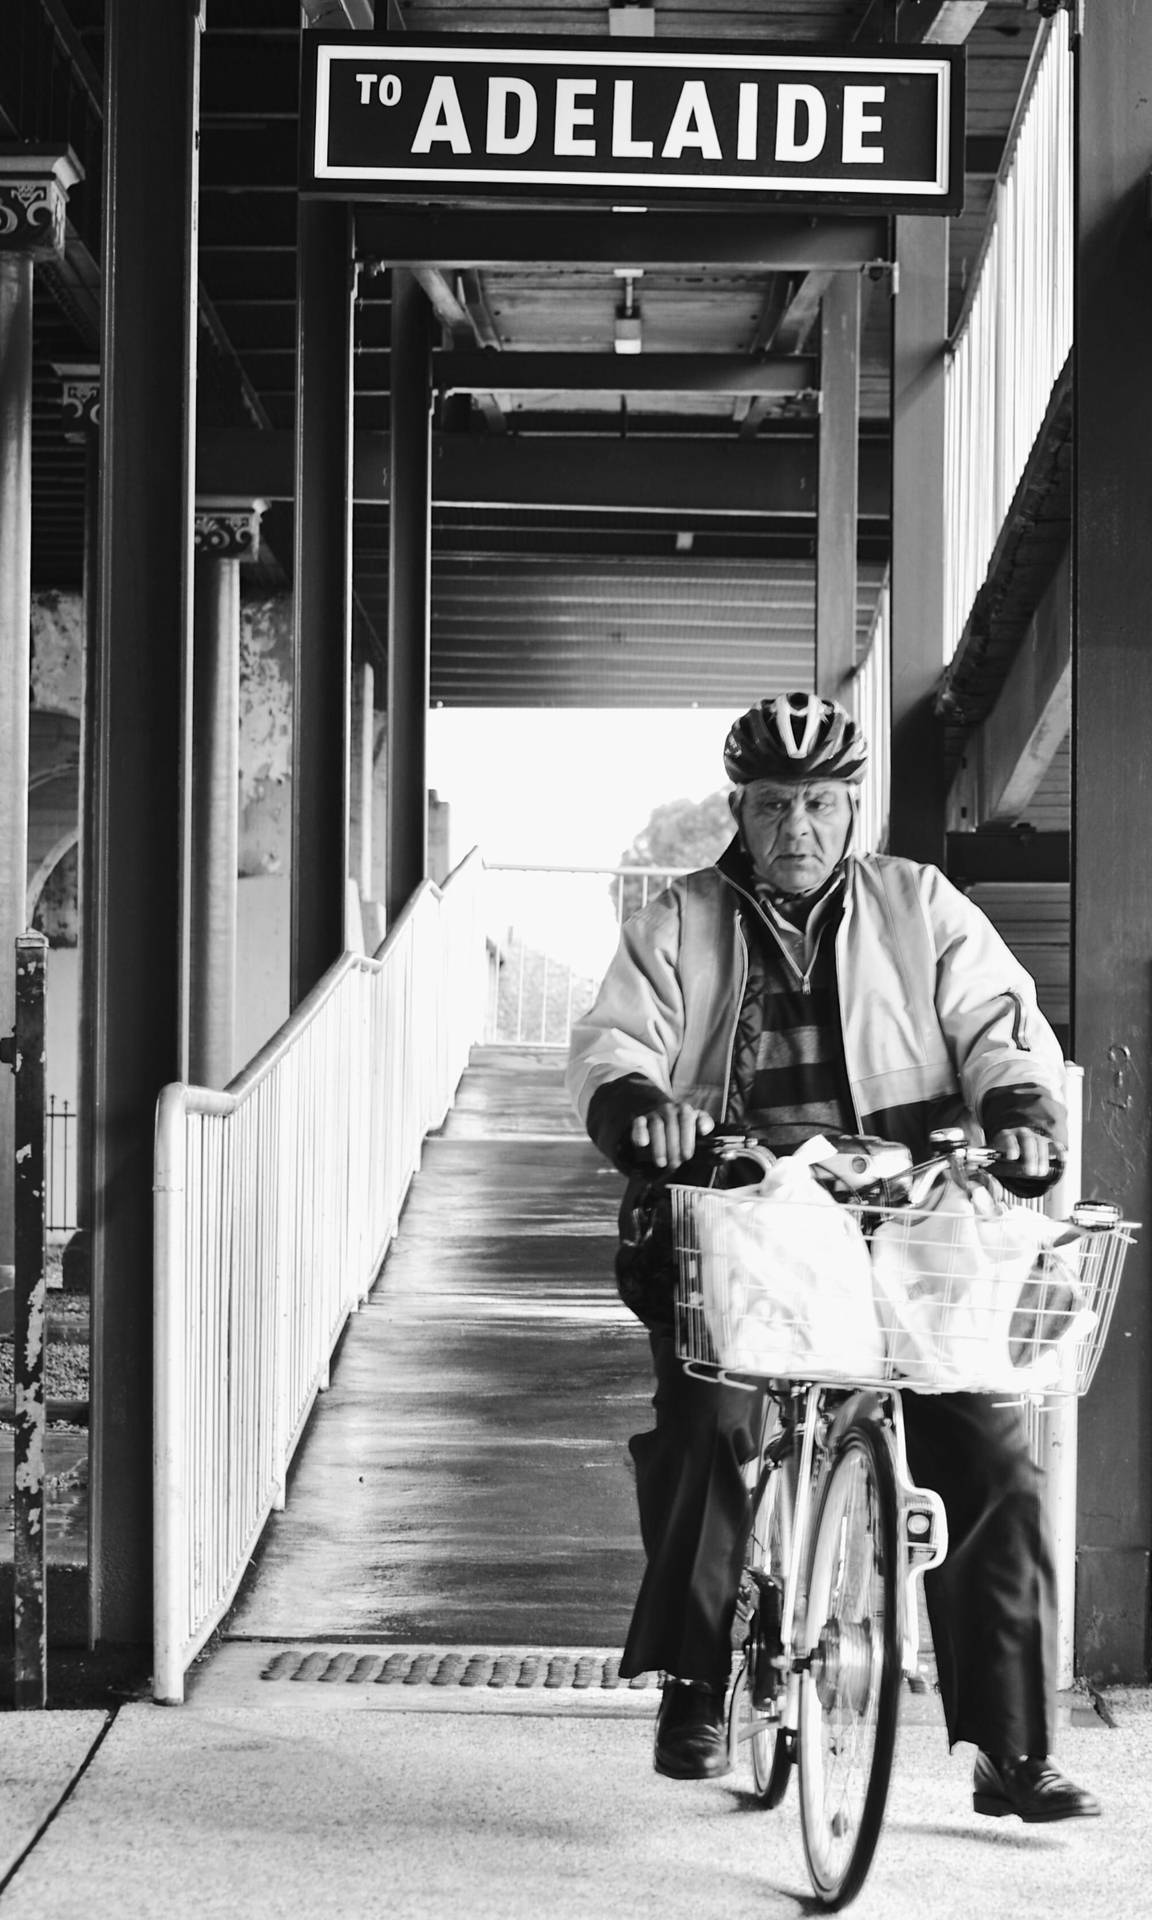 Adelaide Signage Above Elderly On Bicycle